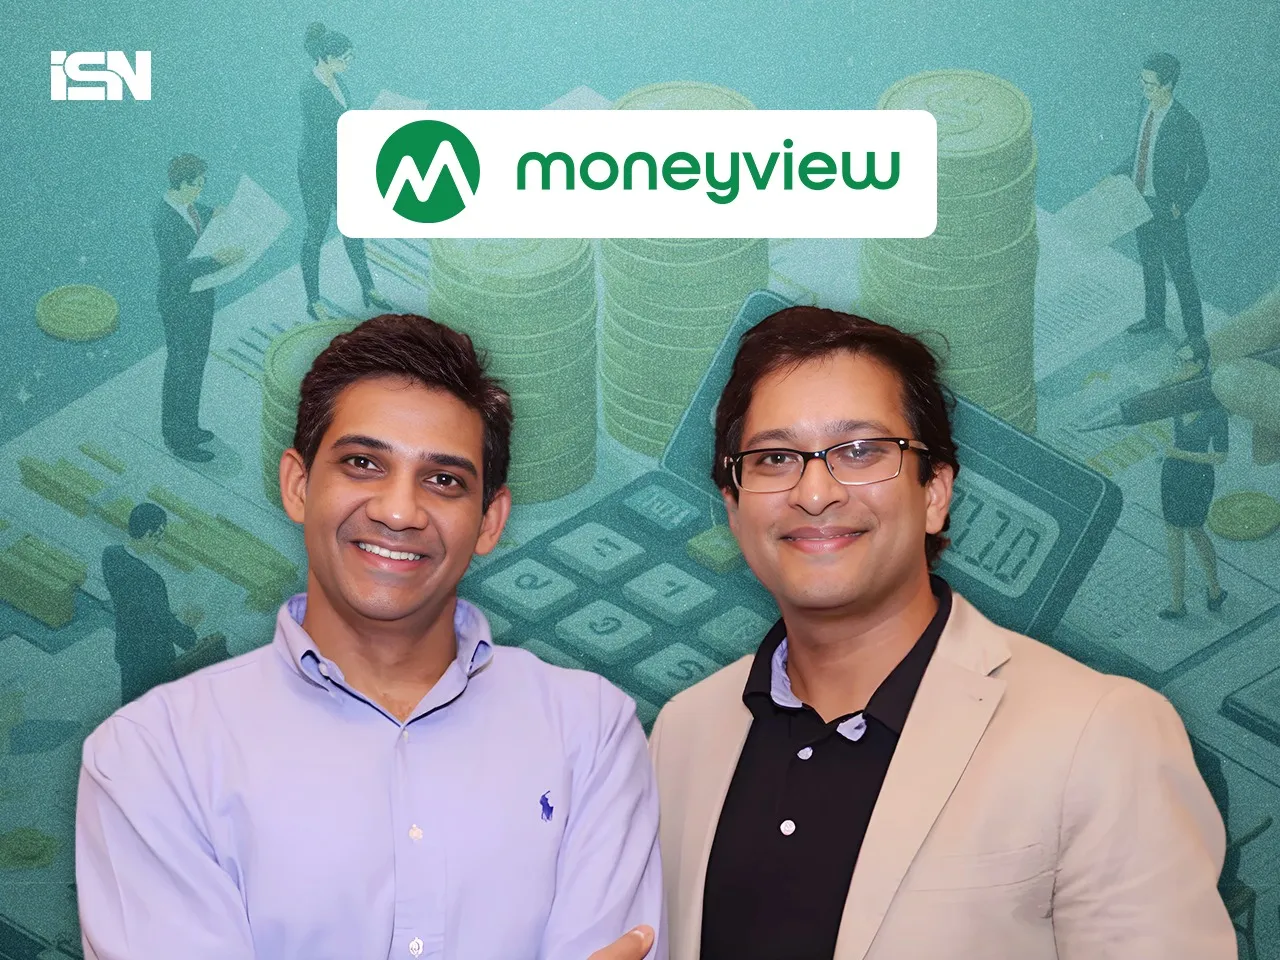 Moneyview founders